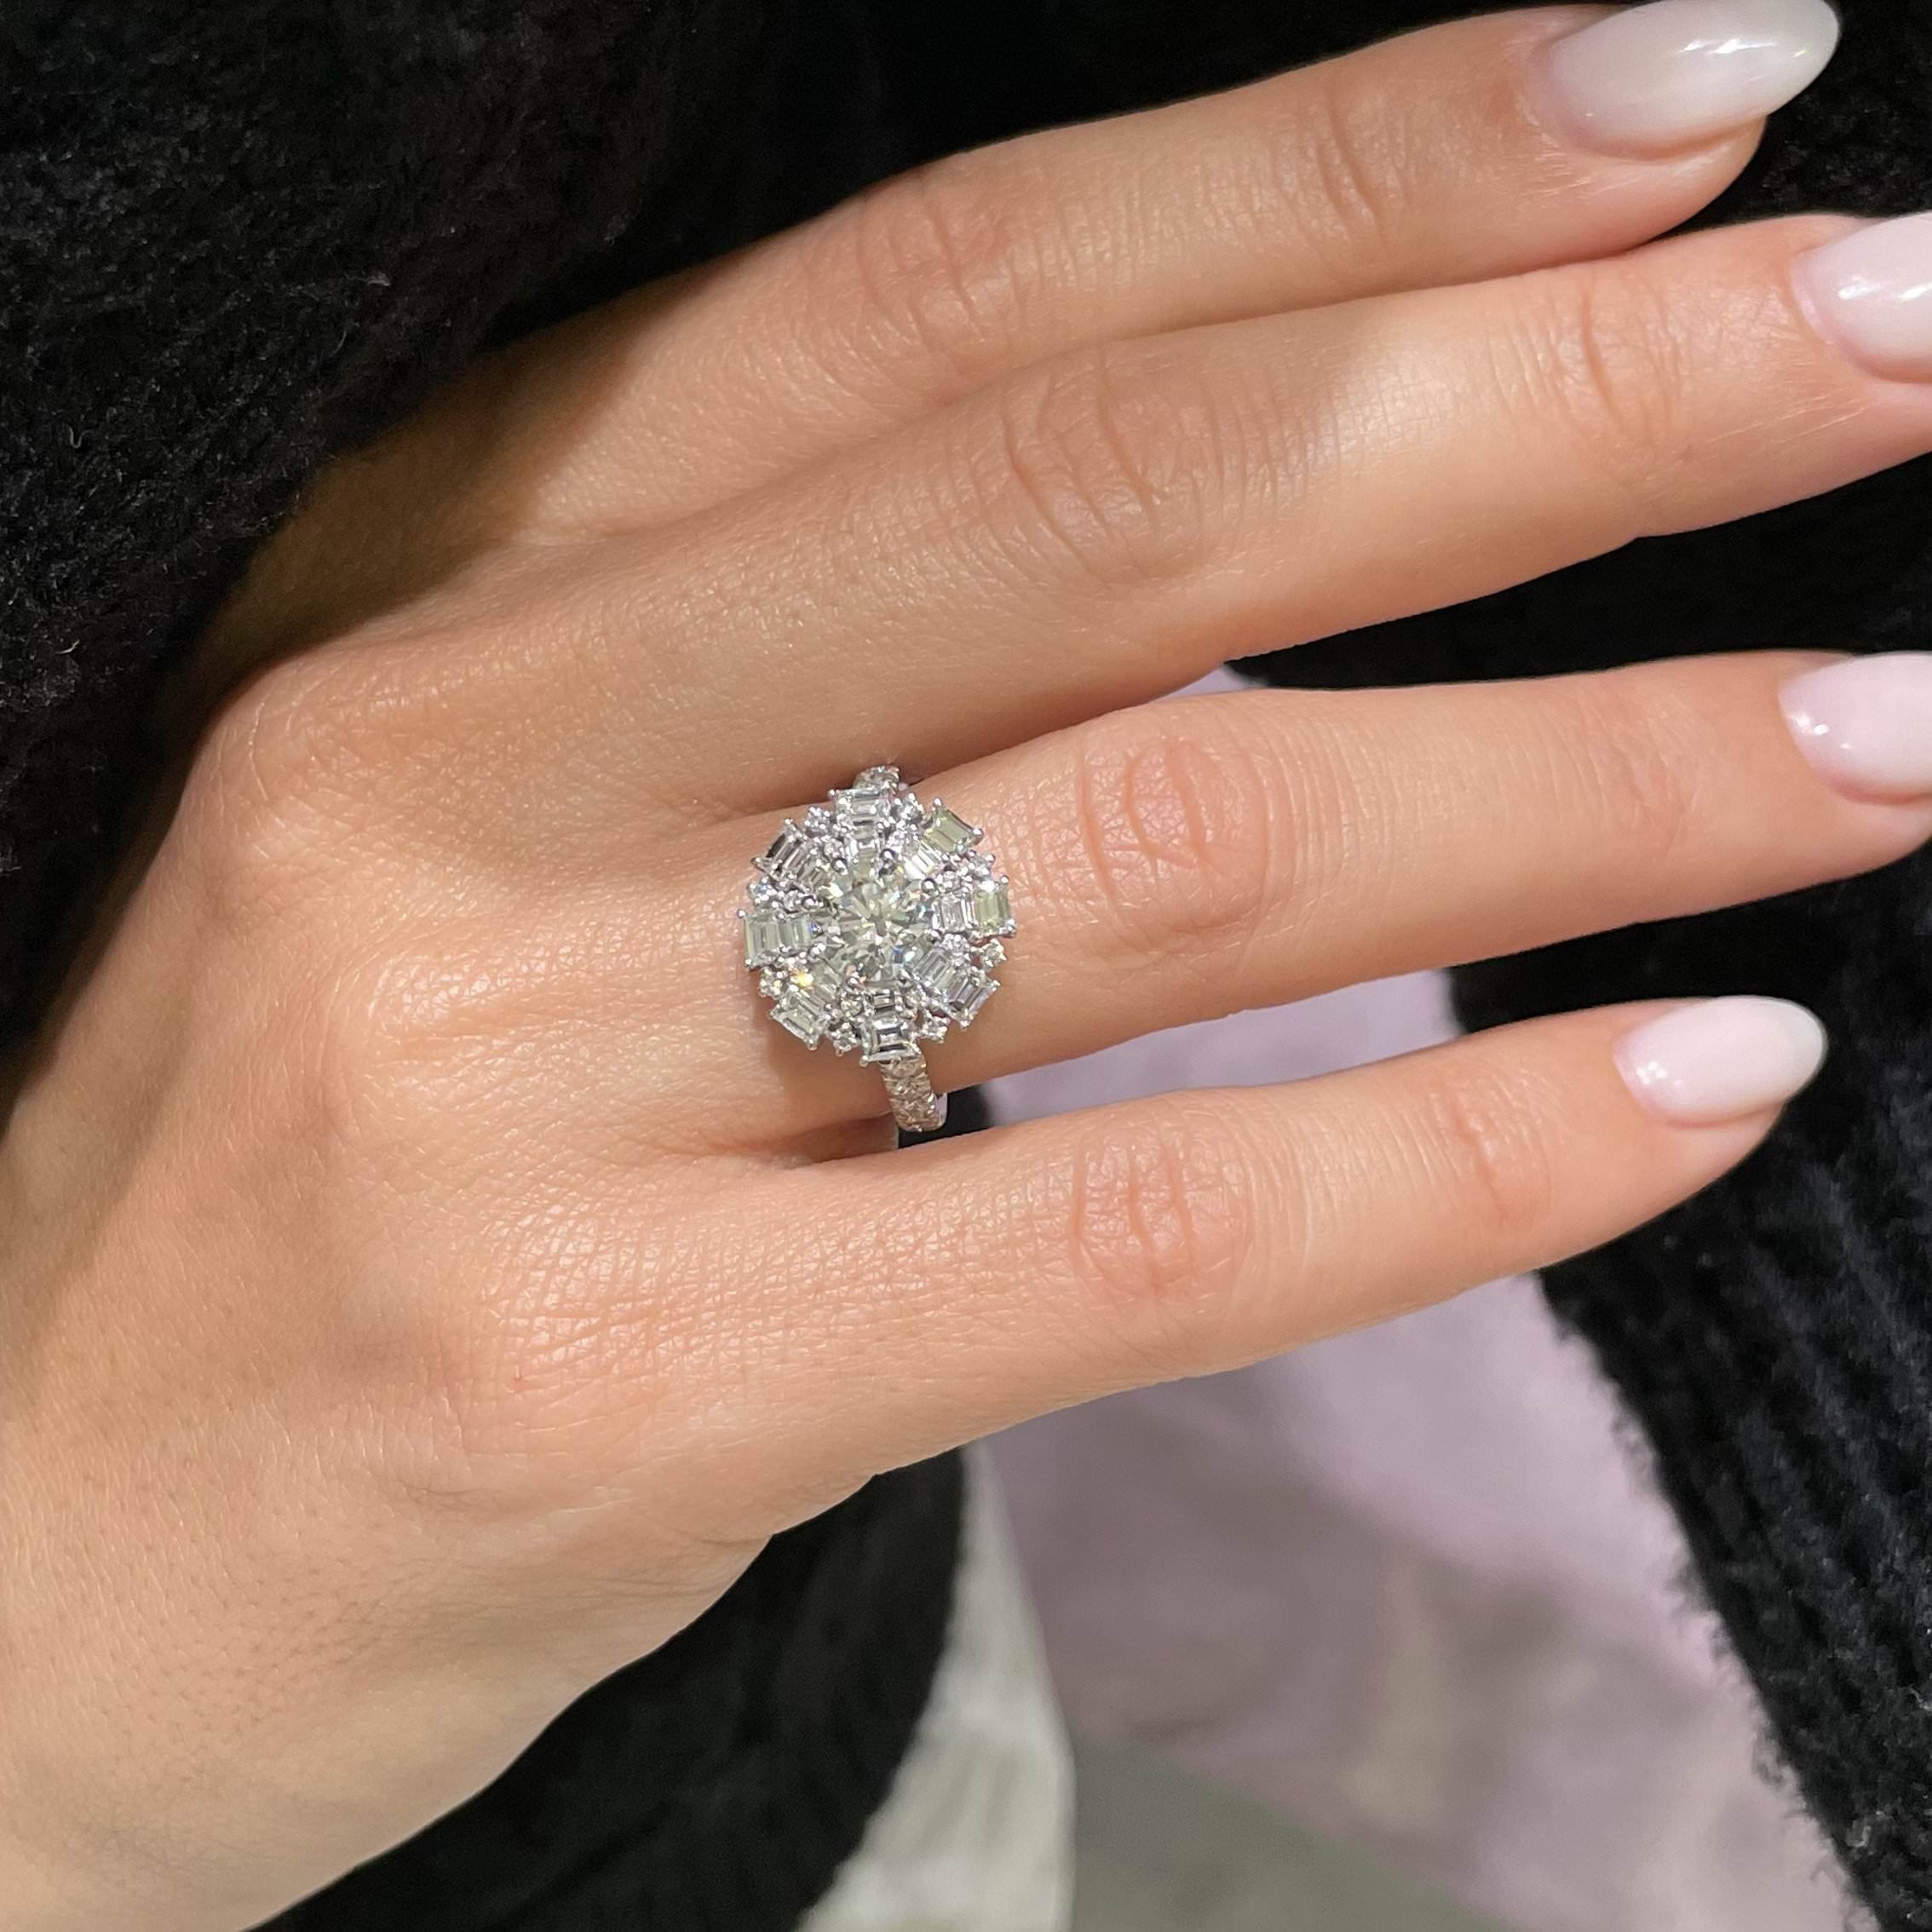 Snowflake Diamond Engagement Ring   (2.5 Carat) -14K White Gold